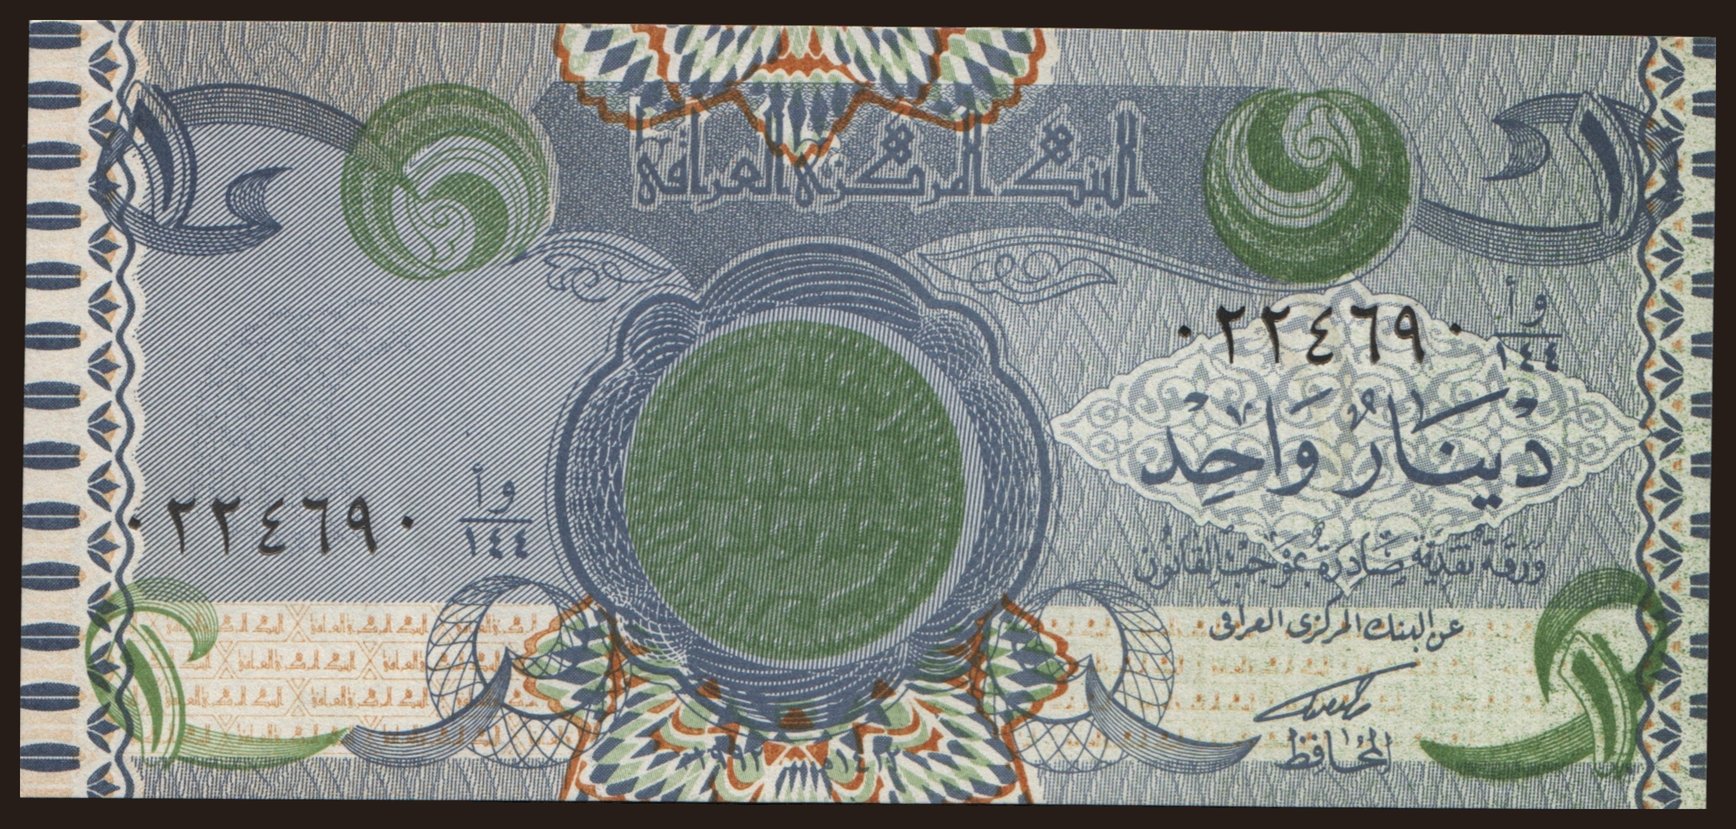 1 dinar, 1992